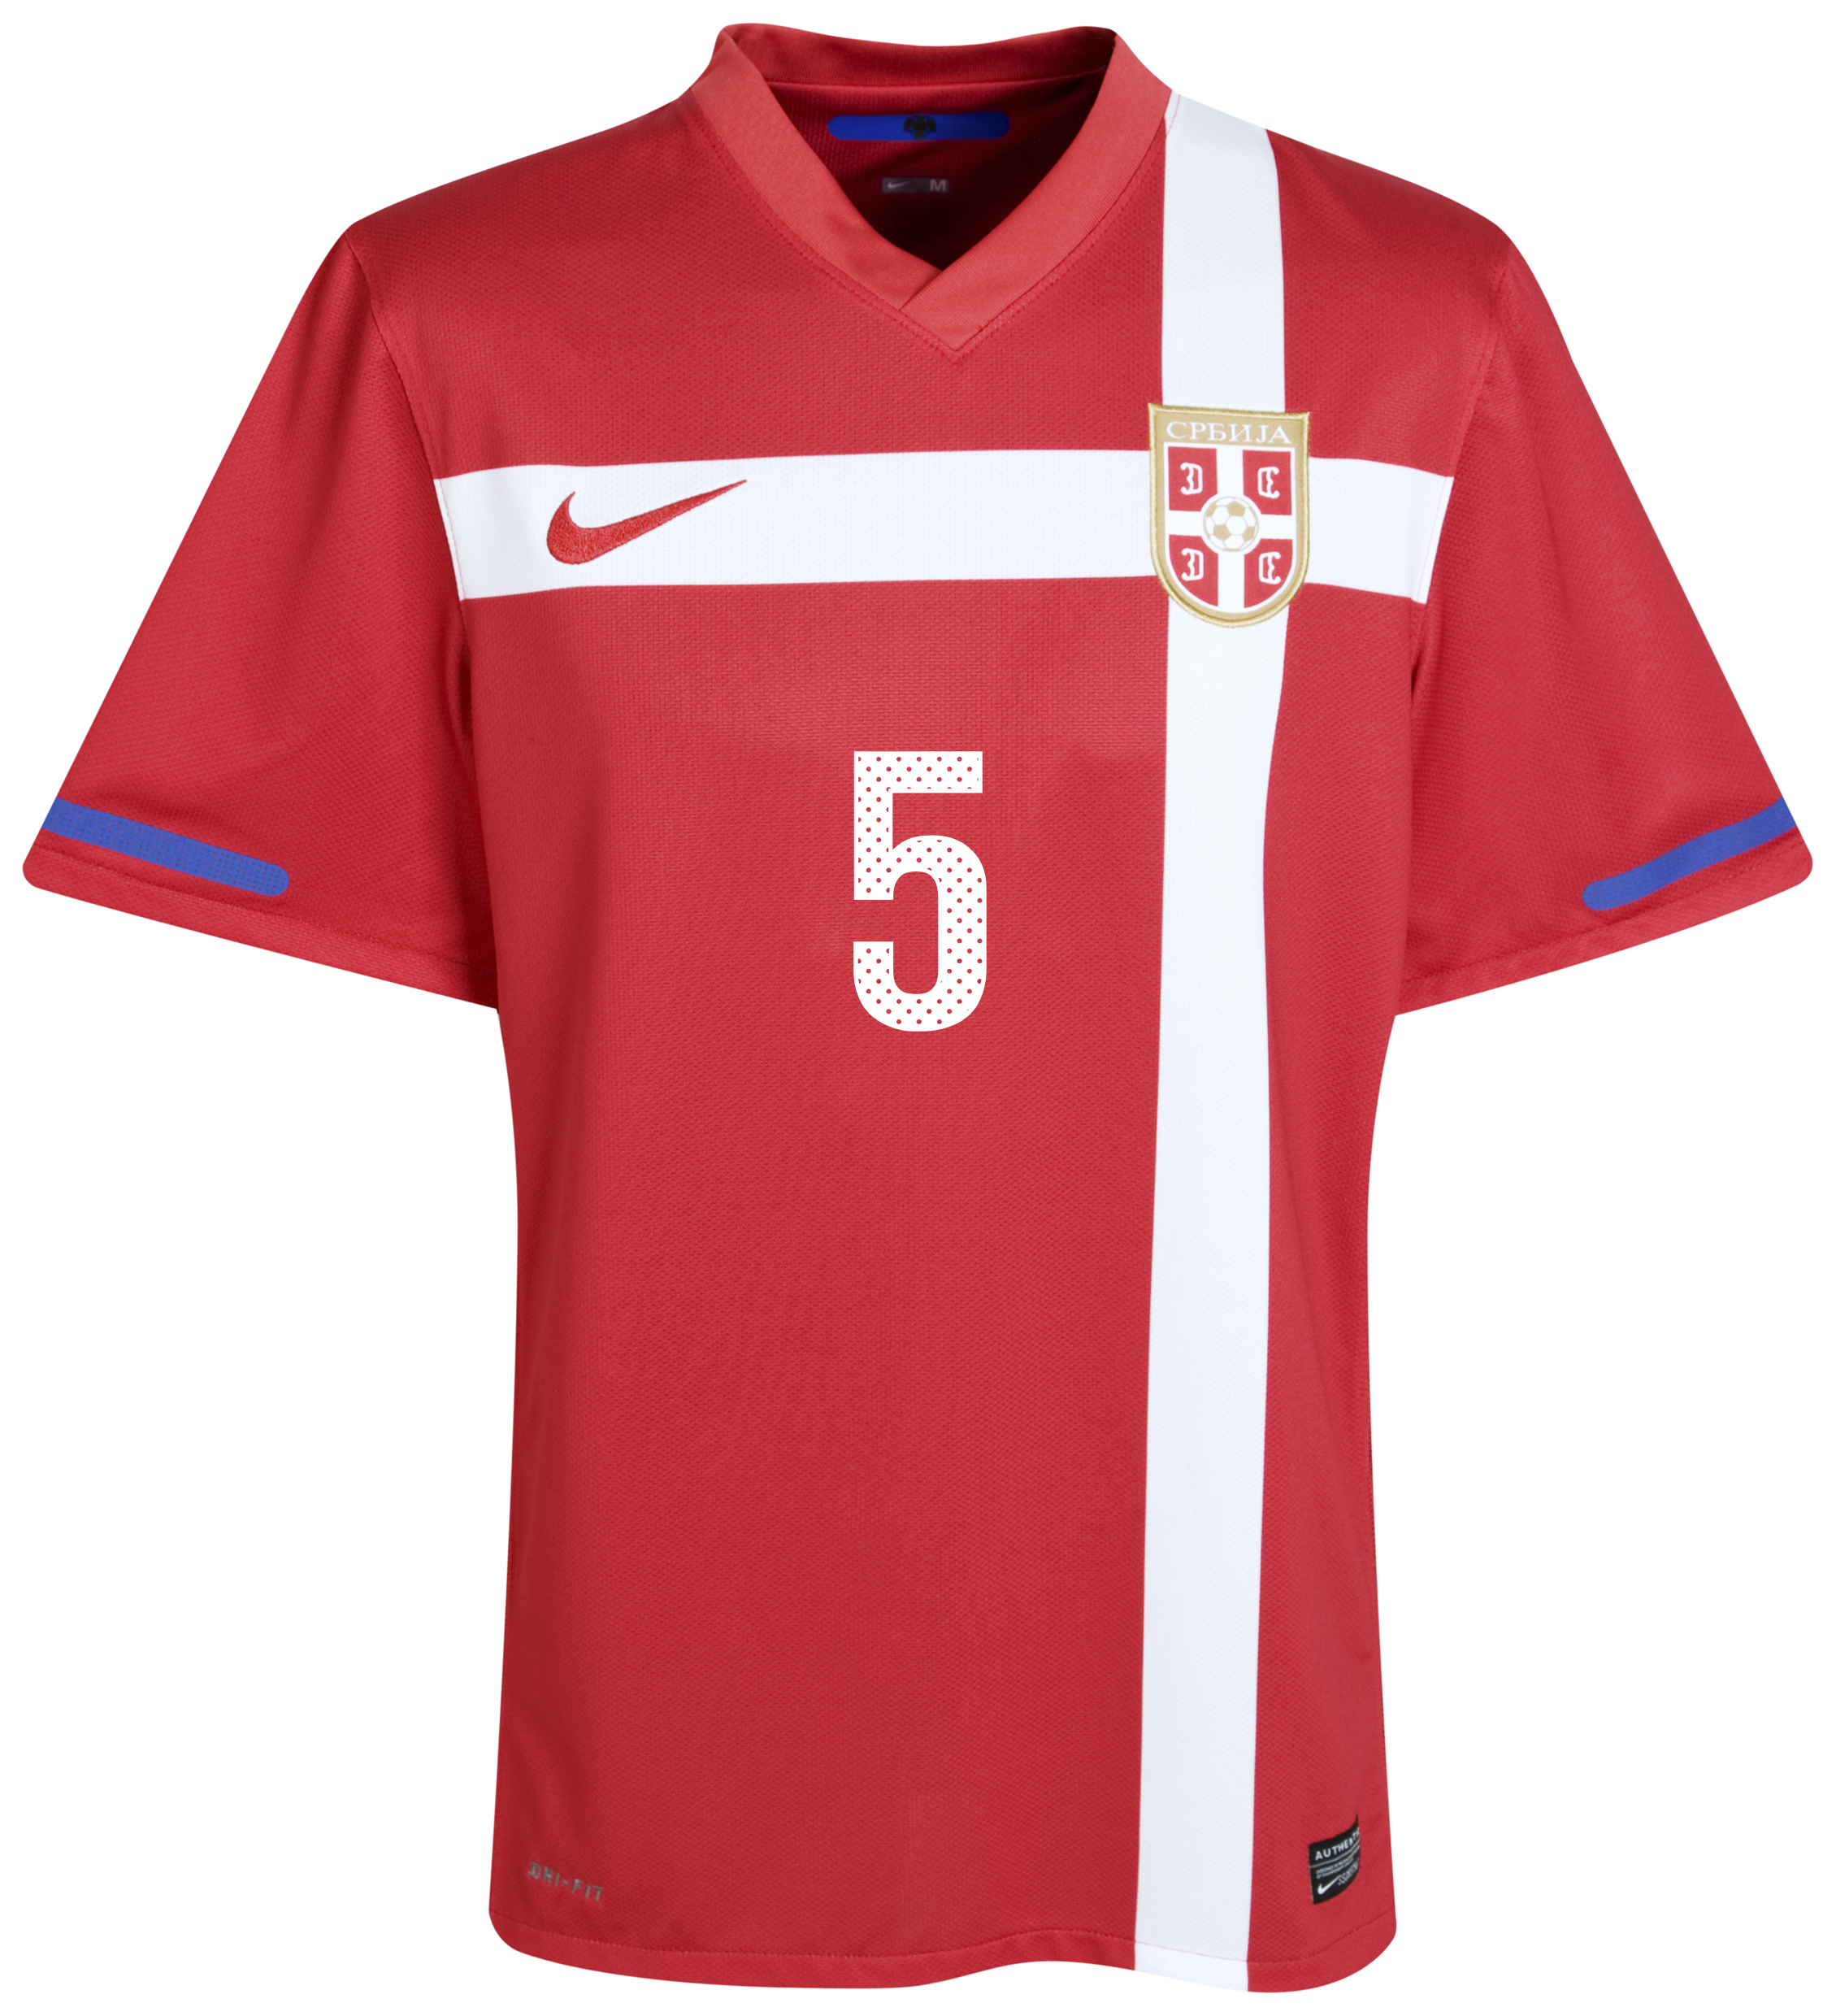 الملابس الرسمية لكأس العالم 2010 Kb-71658a